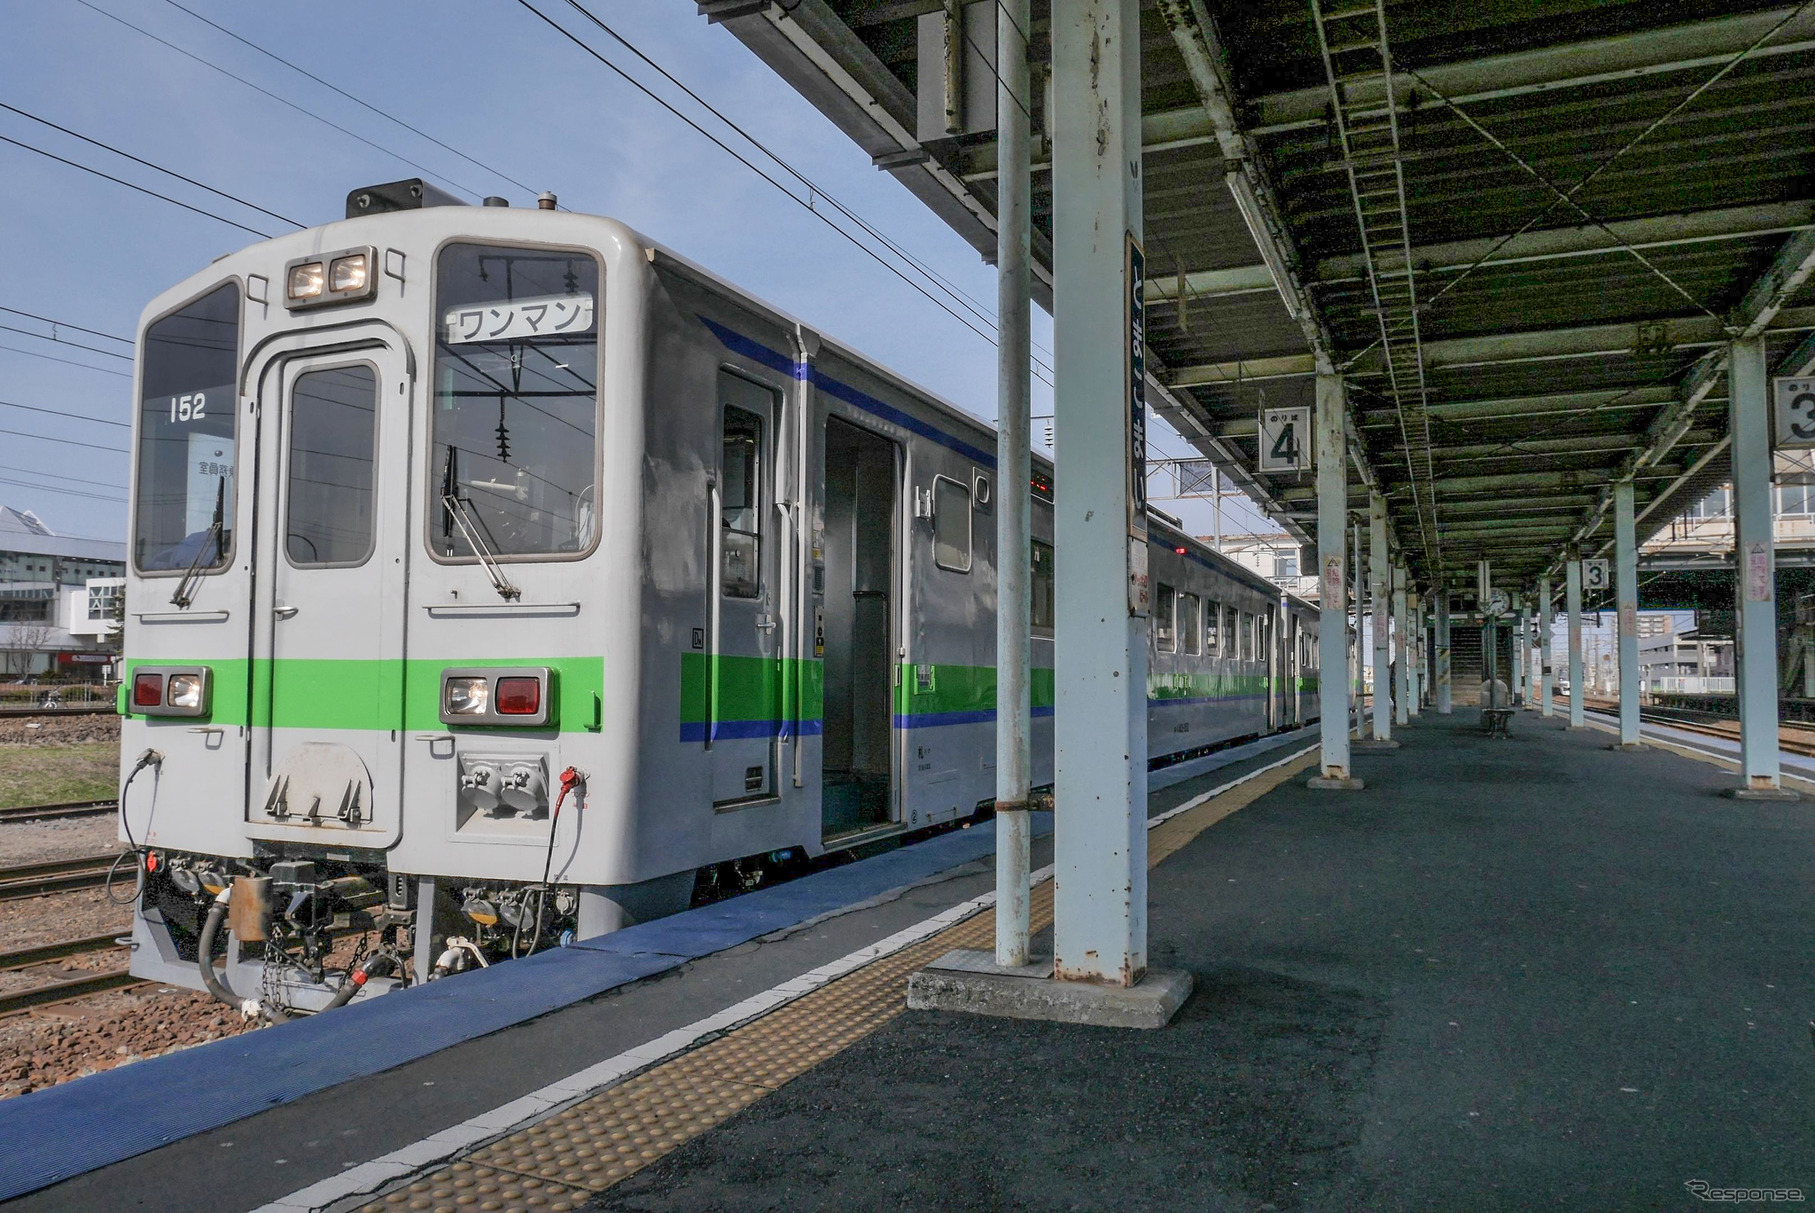 苫小牧駅で発車を待つキハ143形の上り普通列車。苗穂運転所配置車のため、早朝・深夜は送込みを兼ねて札幌～苫小牧間にも普通列車として入線するが、その時は車掌が乗務する。